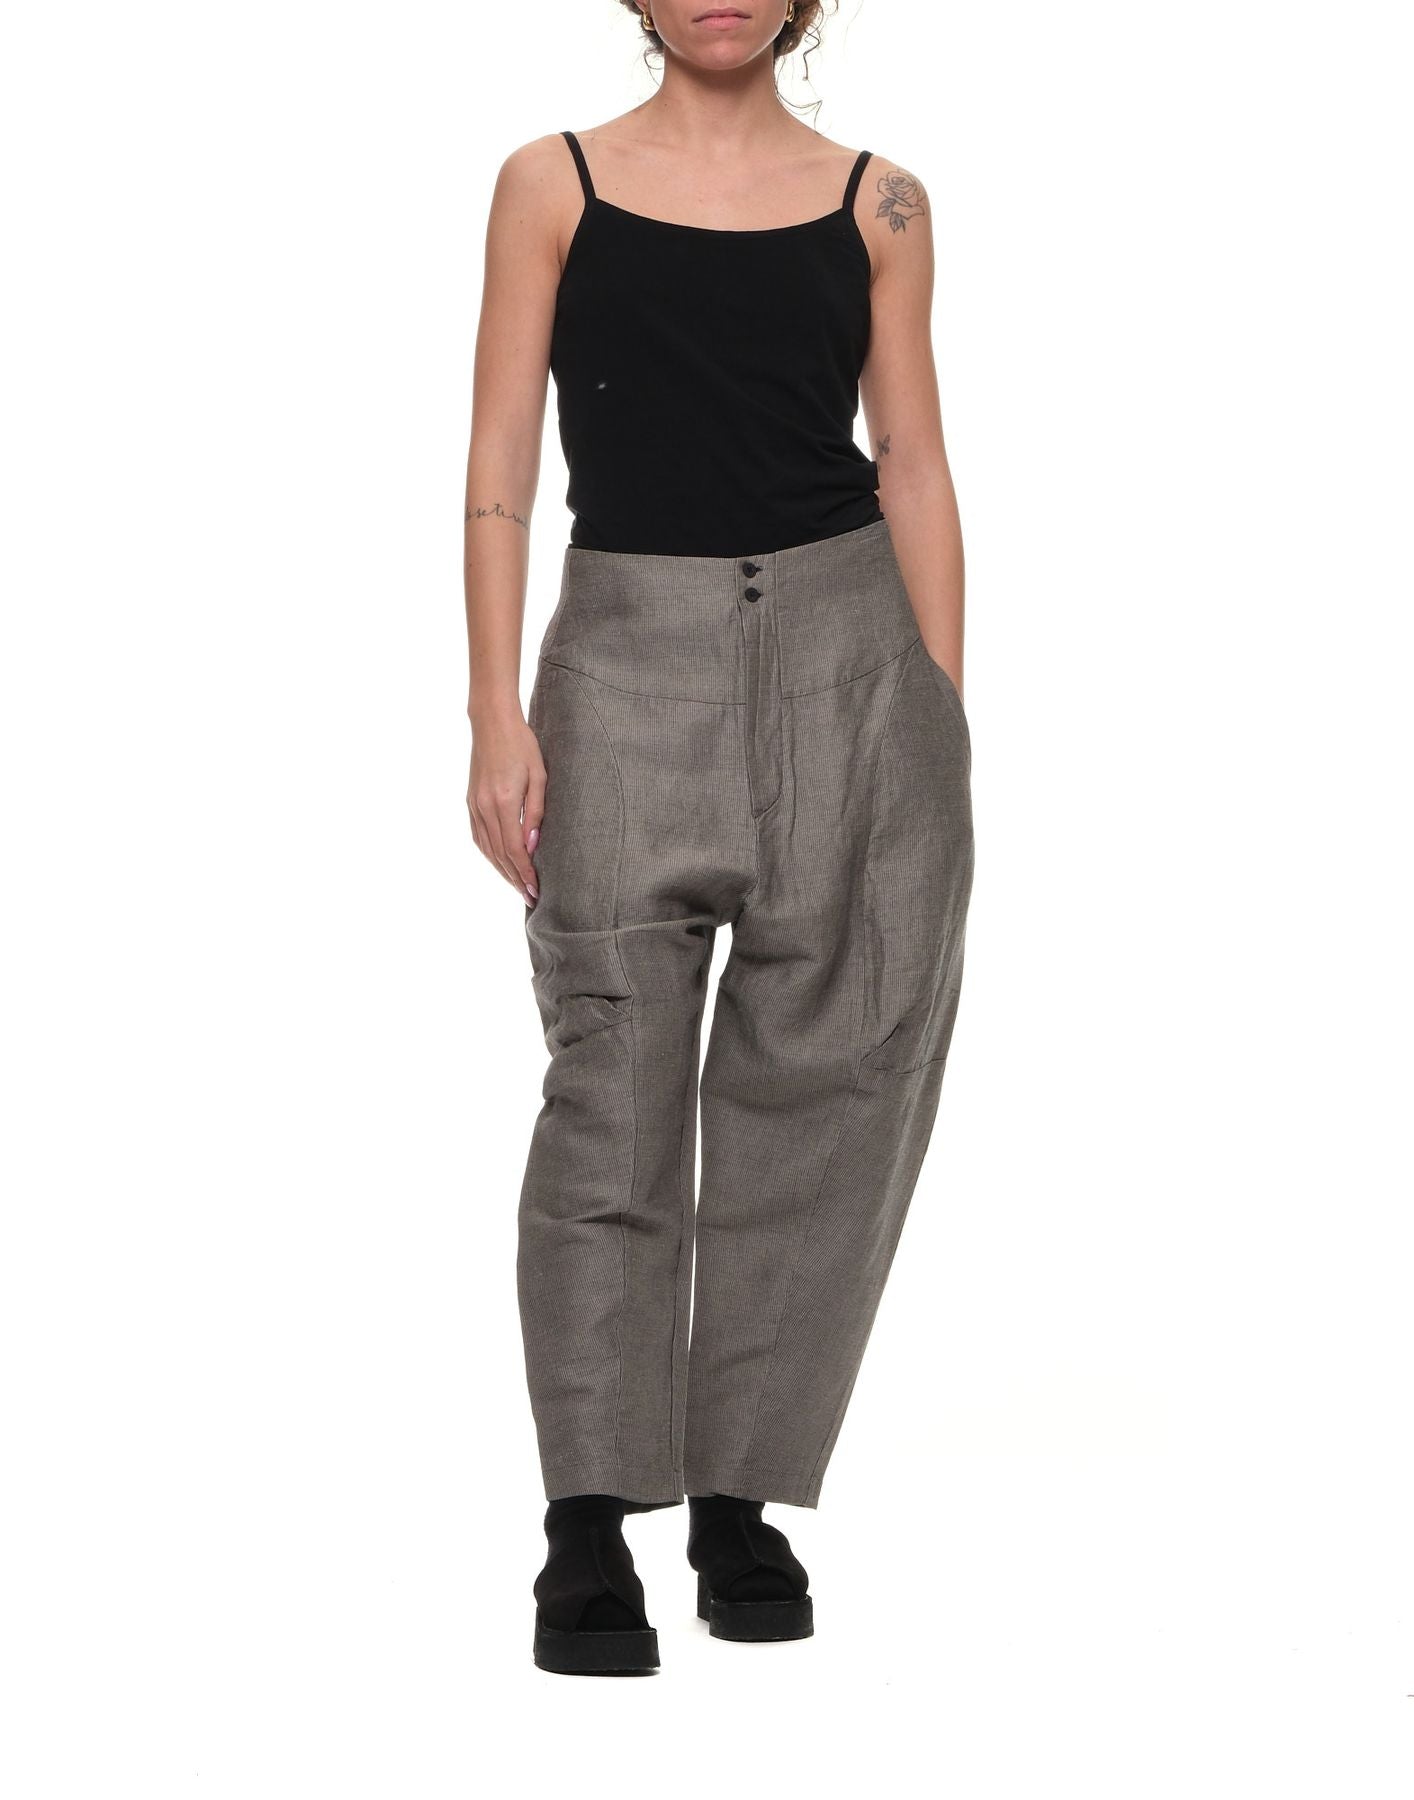 Pants for woman CFDTRWB112 112 TRANSIT